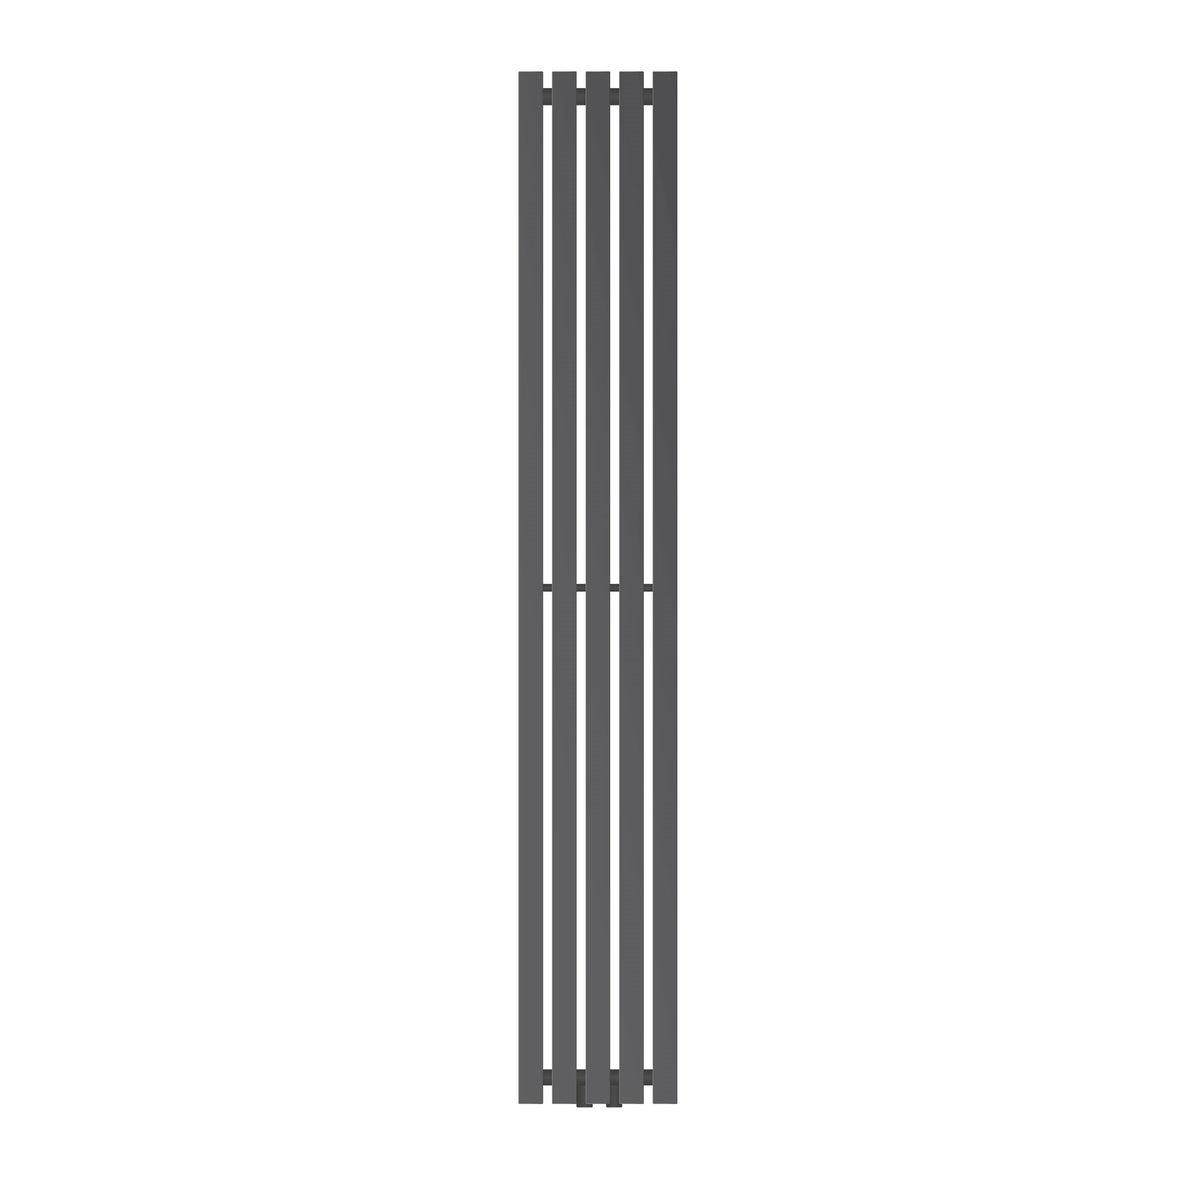 LuxeBath Designheizkörper Stella 1800 x 260 mm Anthrazit, Paneelheizkörper Mittelanschluss, Einlagig, Flach, Vertikal, Badheizkörper Röhrenheizkörper Flachheizkörper Badezimmer Heizung Bad Wandheizung